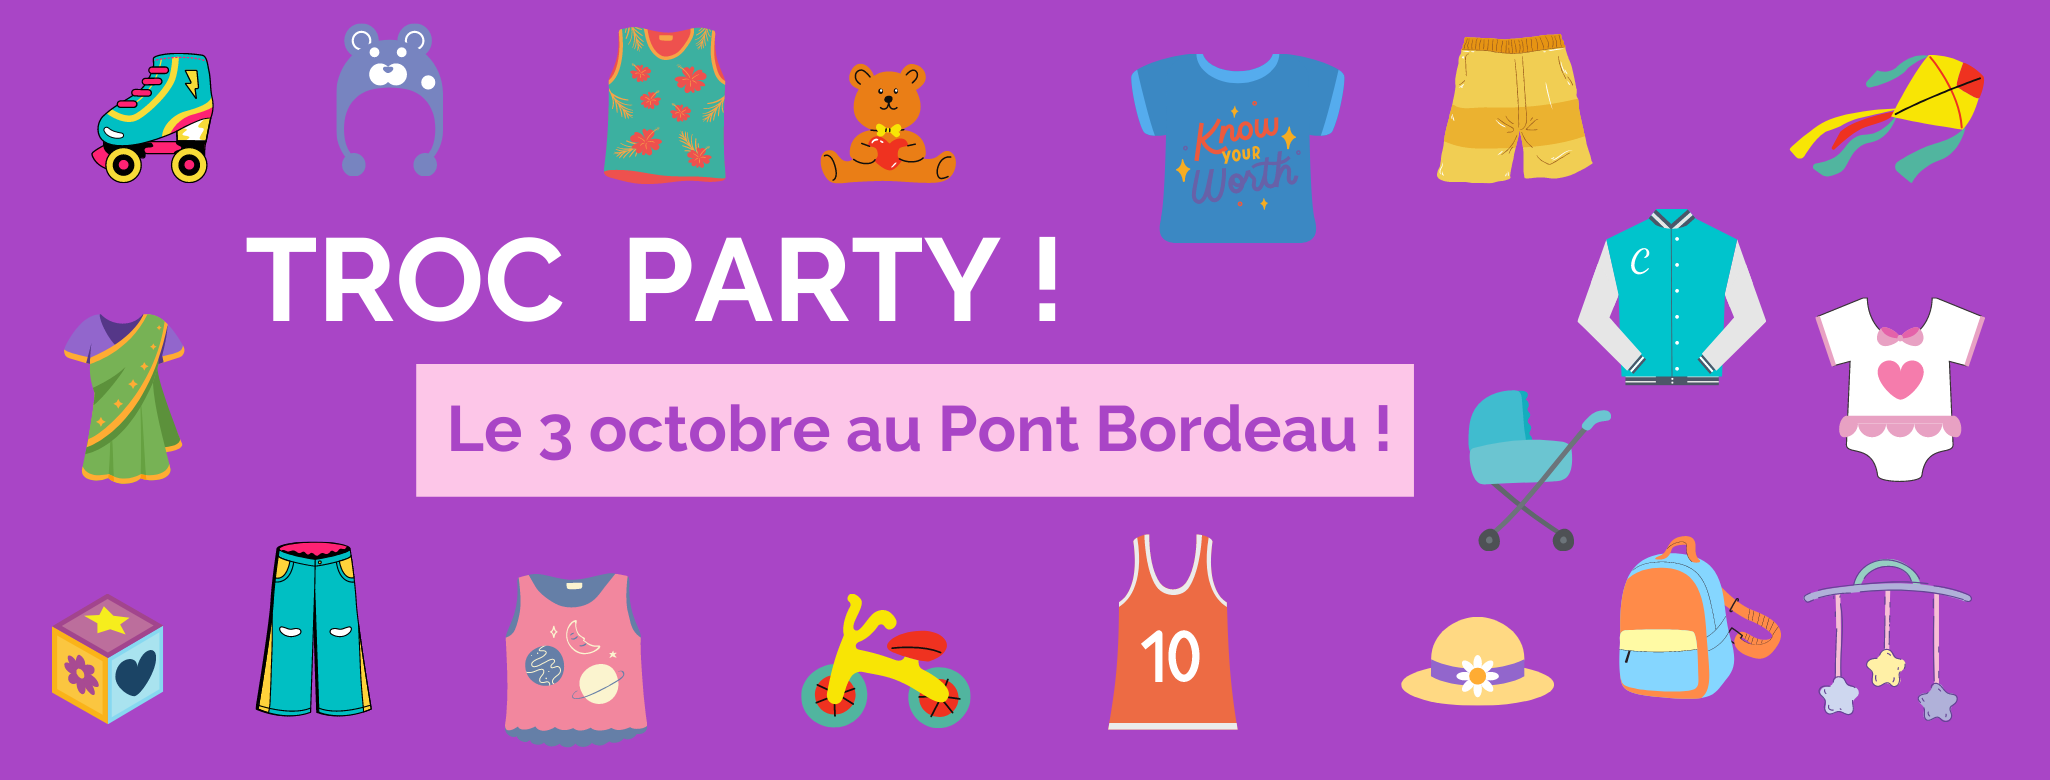 La Troc Party du 3 octobre de l'ASCA c'est au Pont Bordeau !